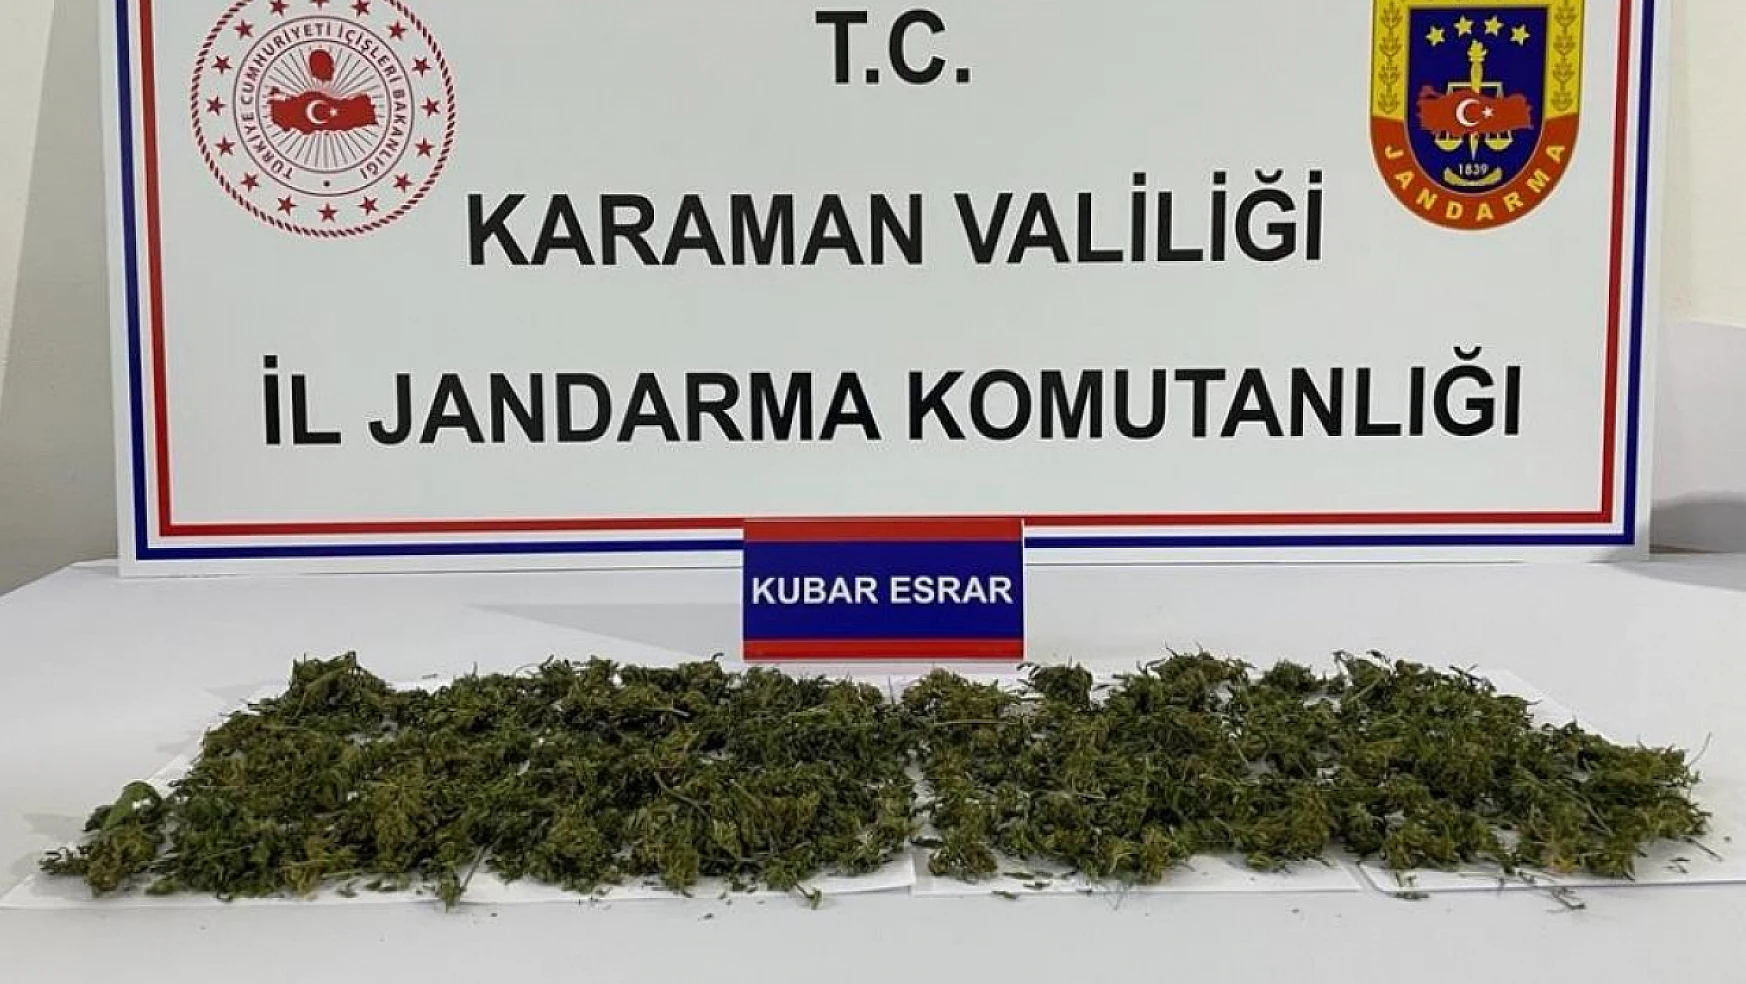 Karaman'da uyuşturucu operasyonu! 1 kişi gözaltına alındı